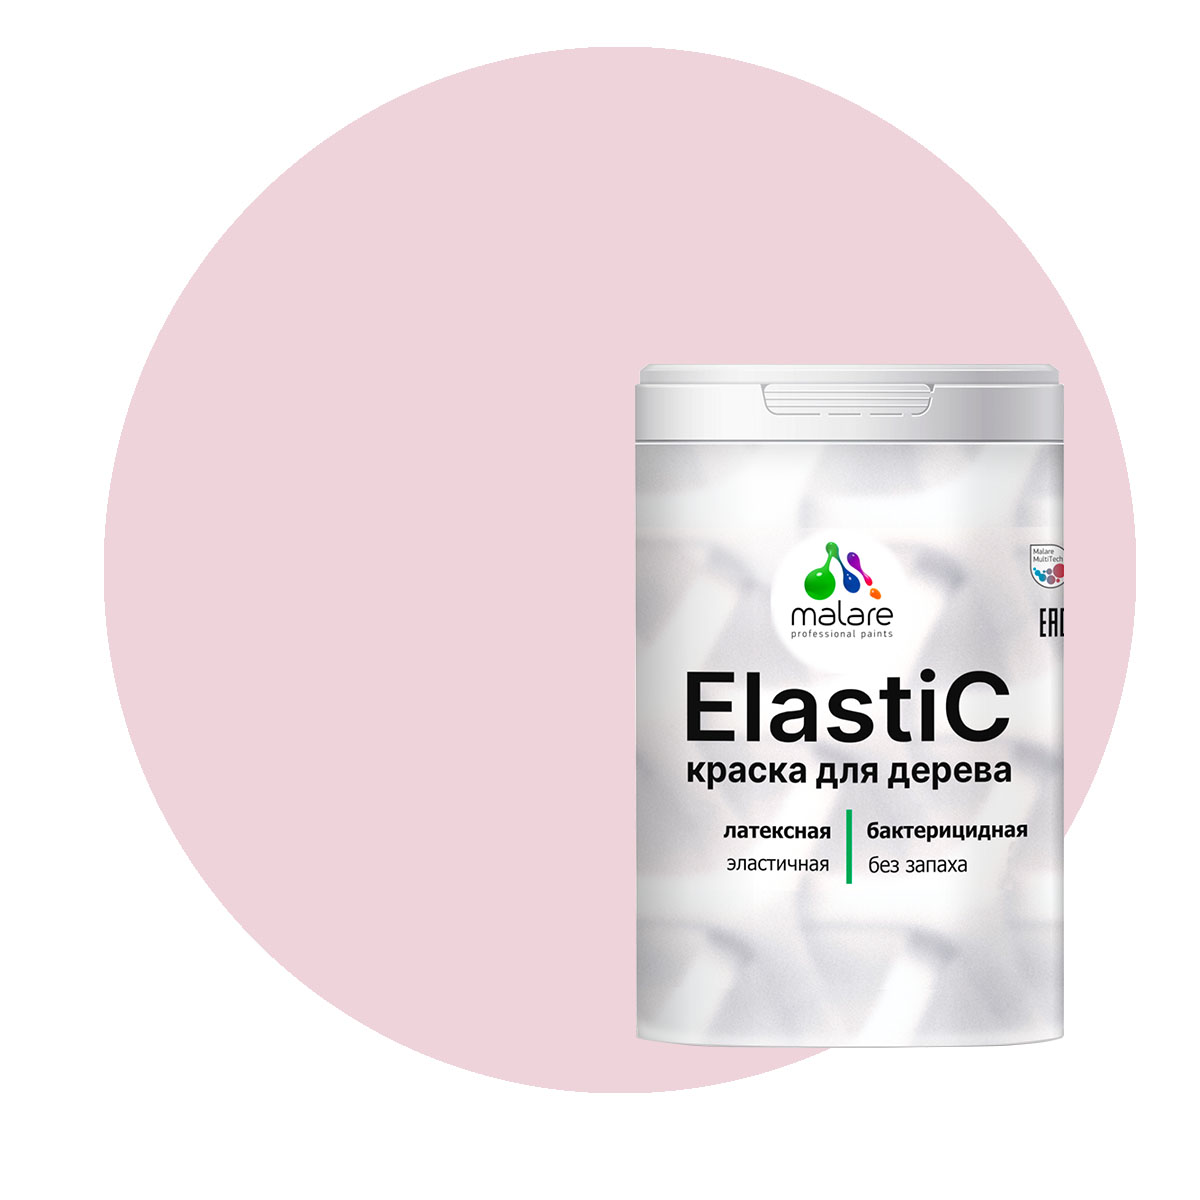 Краска Malare Elastic для деревянных поверхностей, бледно-розовый, 2 кг.